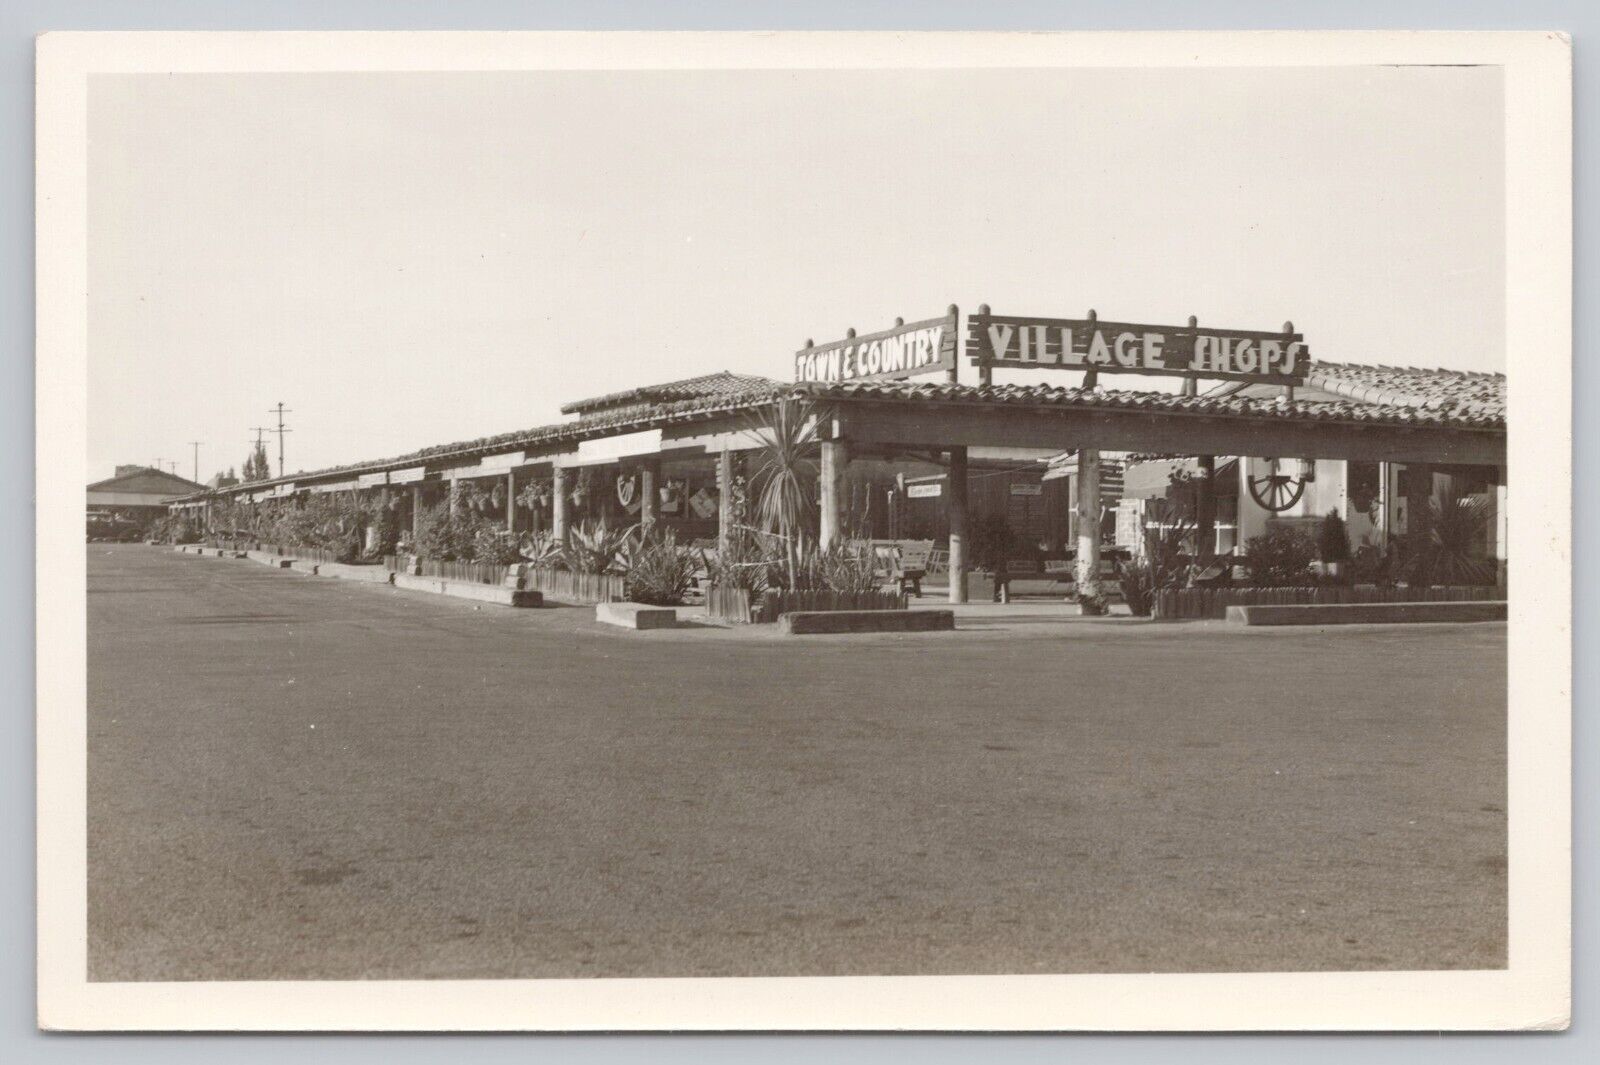 Sacramento California, Town & Country Village Shops VTG RPPC Real Photo Postcard